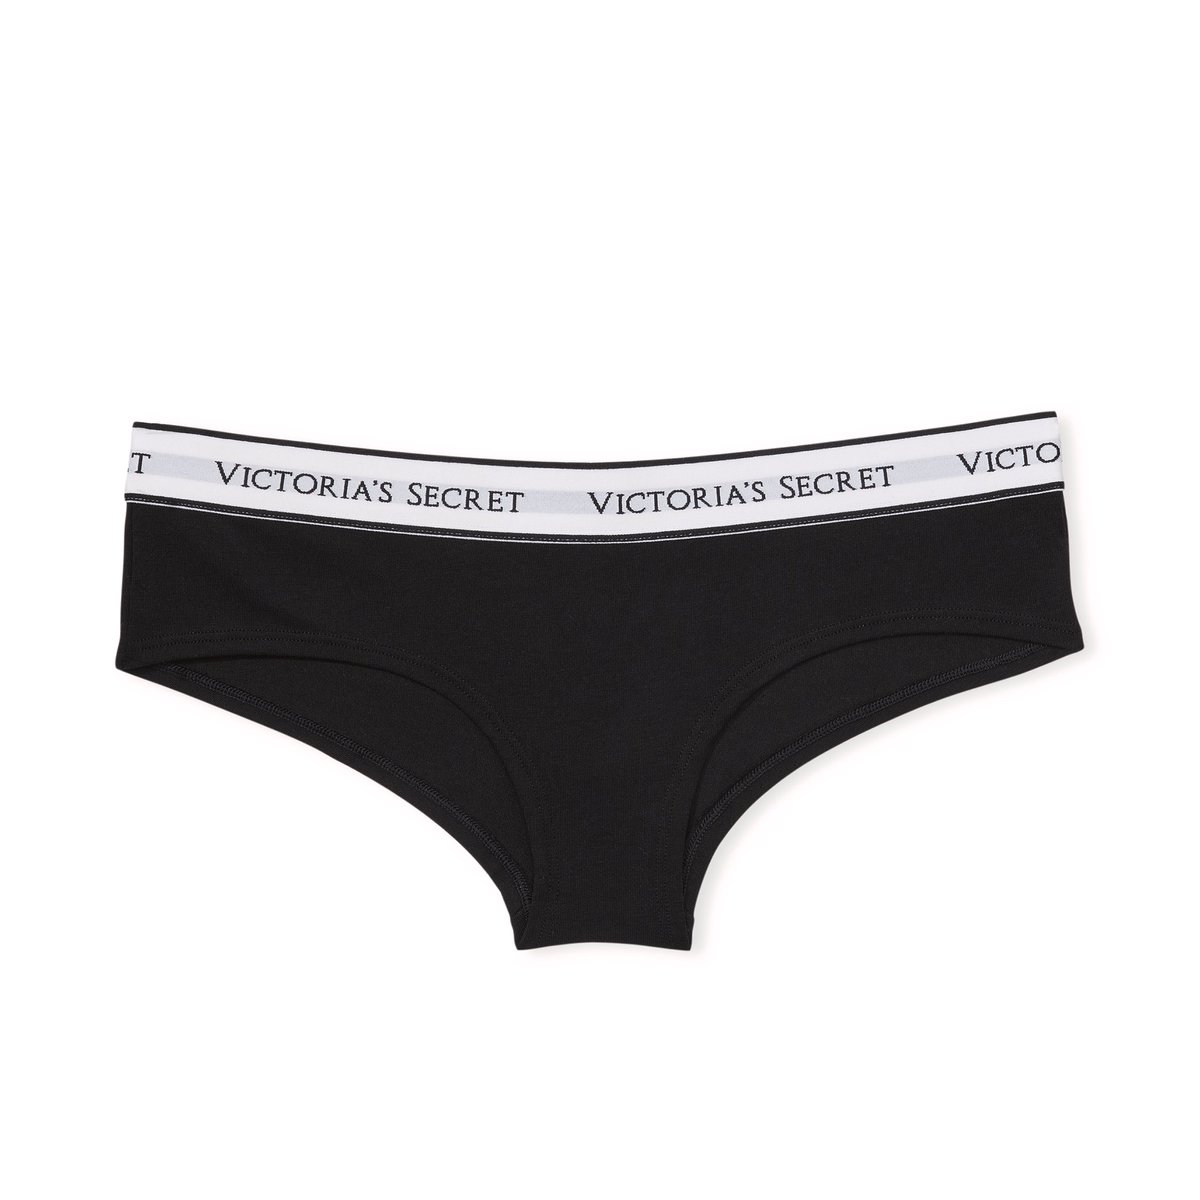 ส่งต่อ victoria's secret panty logo แท้💯 มือ1
รุ่น hiphugger size M 490 รส (from590) พร้อมโอนลดได้❕❕

#ส่งต่อvictoriassecret
#victoriassecretthailand #victoriassecretมือ2 #ส่งต่อck #ส่งต่อcelvinklein #ckมือสอง  #Victoria #victoriasecretthailand #ชุดชั้นในวิคตอเรีย